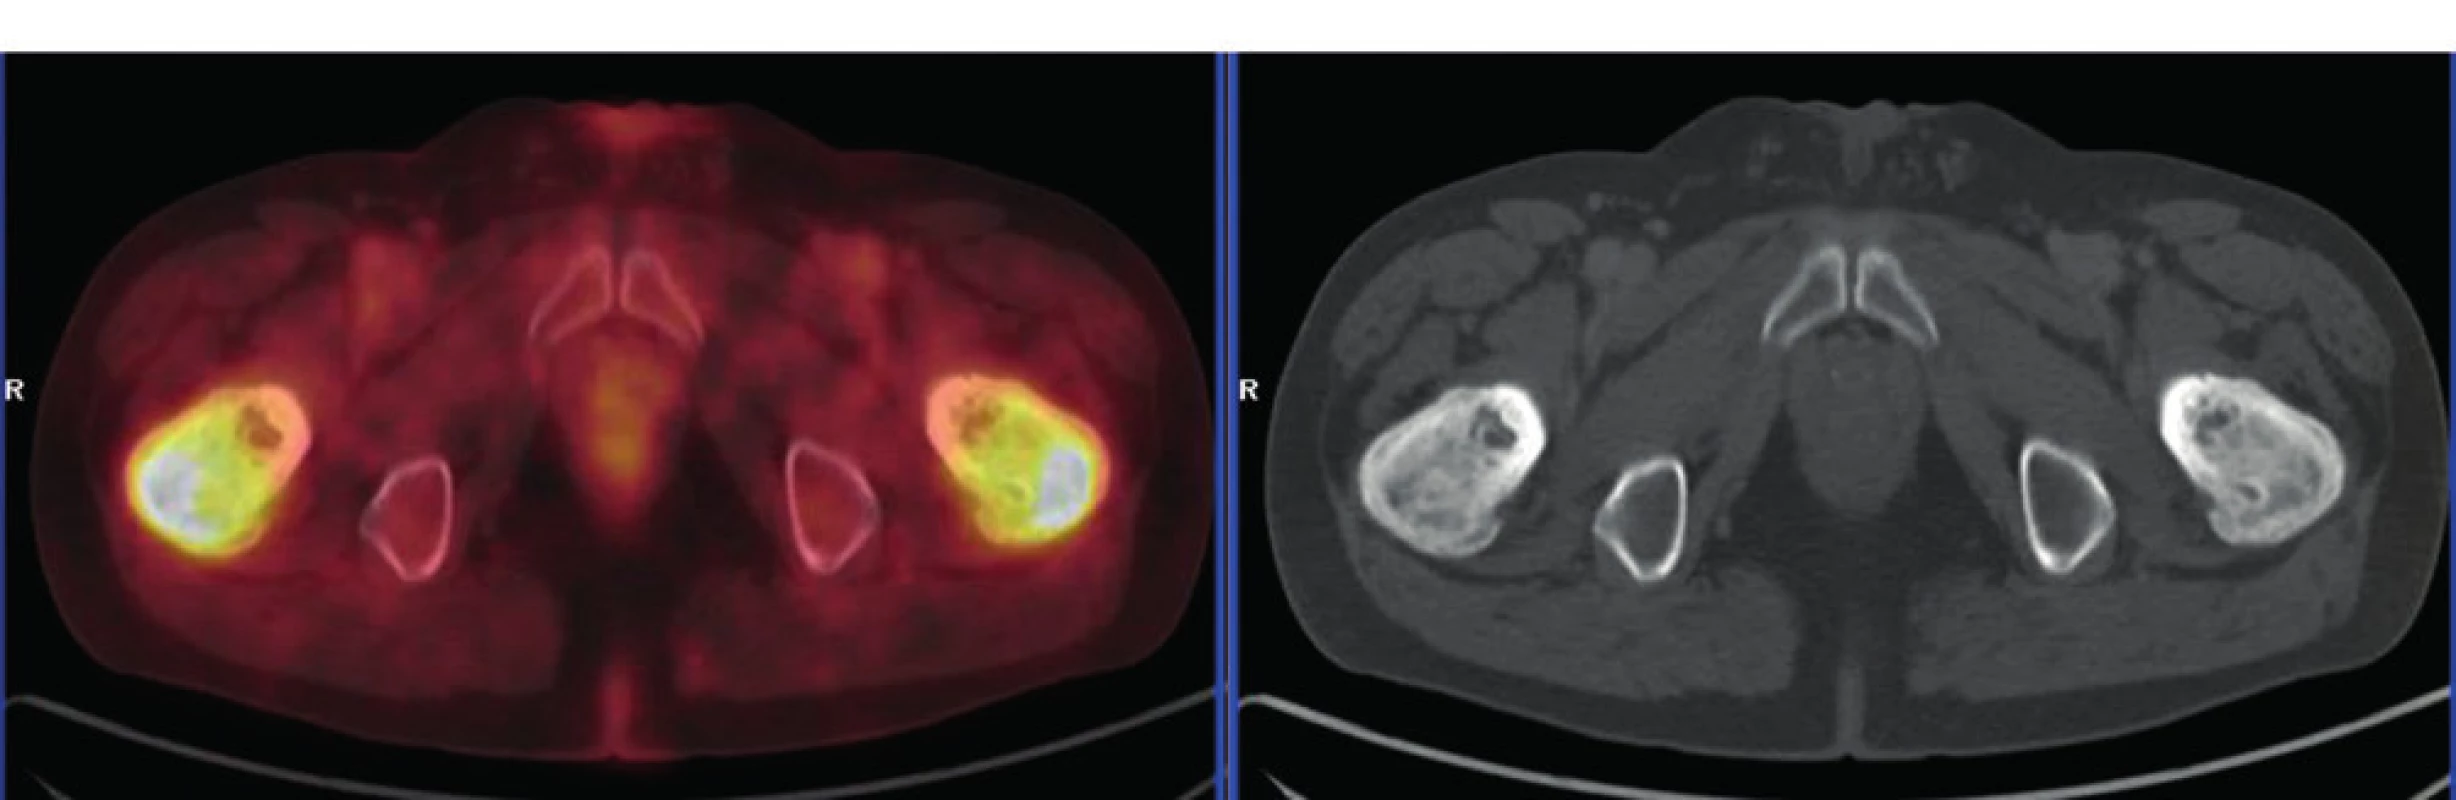 PET-CT zobrazení femurů u pacienta s ECD – axiální řez:
oba femury mají nepravidelnou, převážně sklerotickou strukturu
spongiózy s osteolytickými okrsky, v těchto místech je i vysoká
akumulace FDG